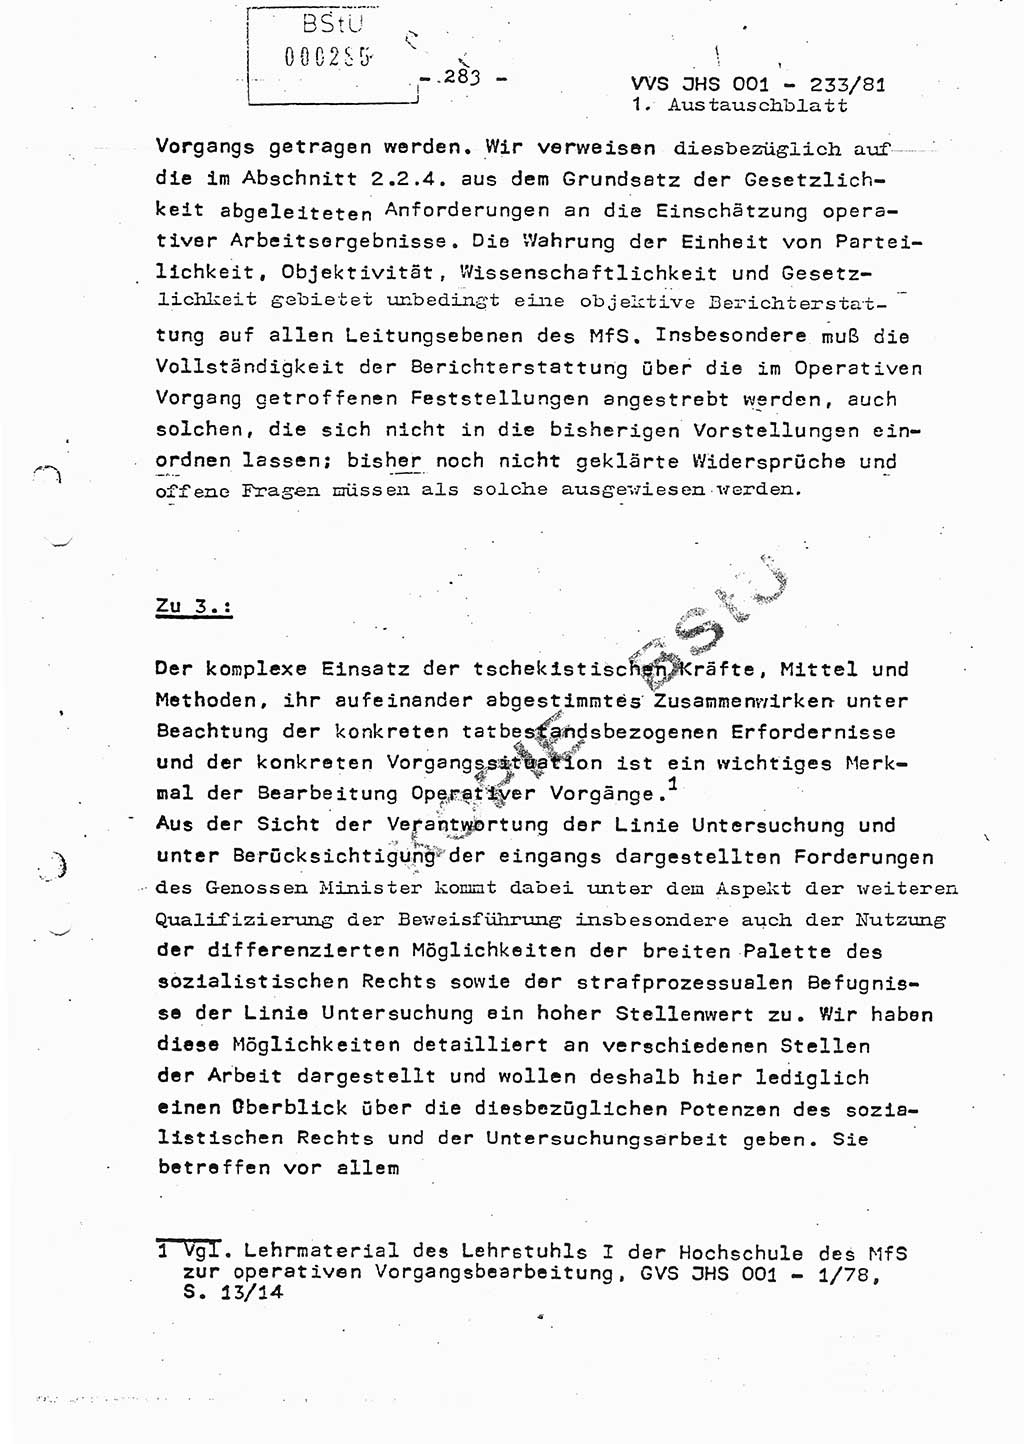 Dissertation Oberstleutnant Horst Zank (JHS), Oberstleutnant Dr. Karl-Heinz Knoblauch (JHS), Oberstleutnant Gustav-Adolf Kowalewski (HA Ⅸ), Oberstleutnant Wolfgang Plötner (HA Ⅸ), Ministerium für Staatssicherheit (MfS) [Deutsche Demokratische Republik (DDR)], Juristische Hochschule (JHS), Vertrauliche Verschlußsache (VVS) o001-233/81, Potsdam 1981, Blatt 283 (Diss. MfS DDR JHS VVS o001-233/81 1981, Bl. 283)